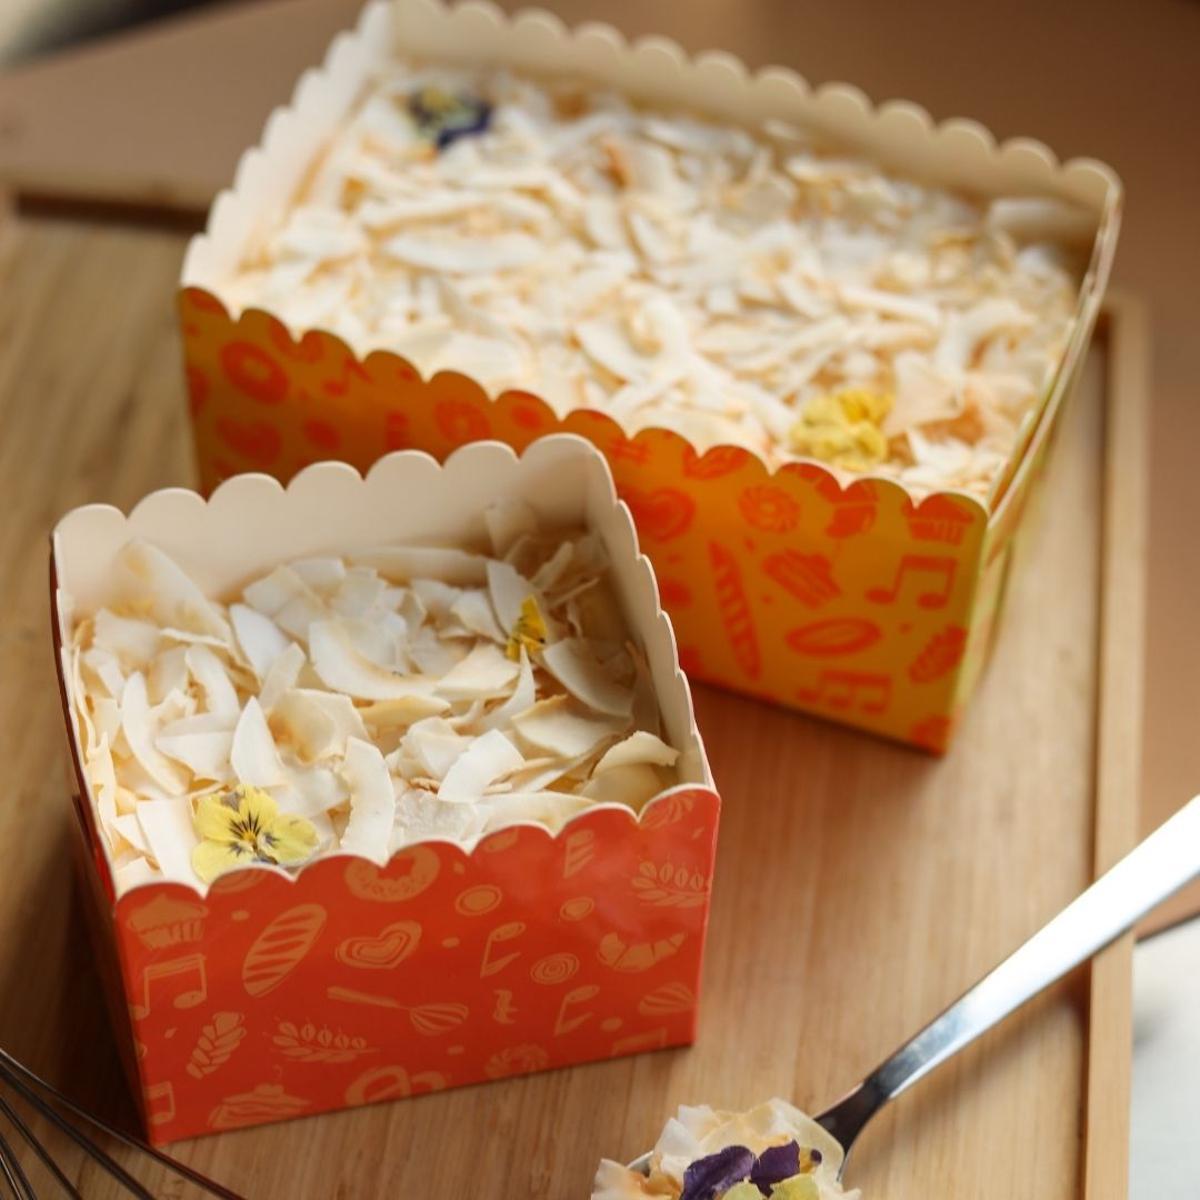 Las cajas de BakerBand, gracias a su portabilidad, permiten comerse el pastel en casa, en la playa o en cualquier lugar